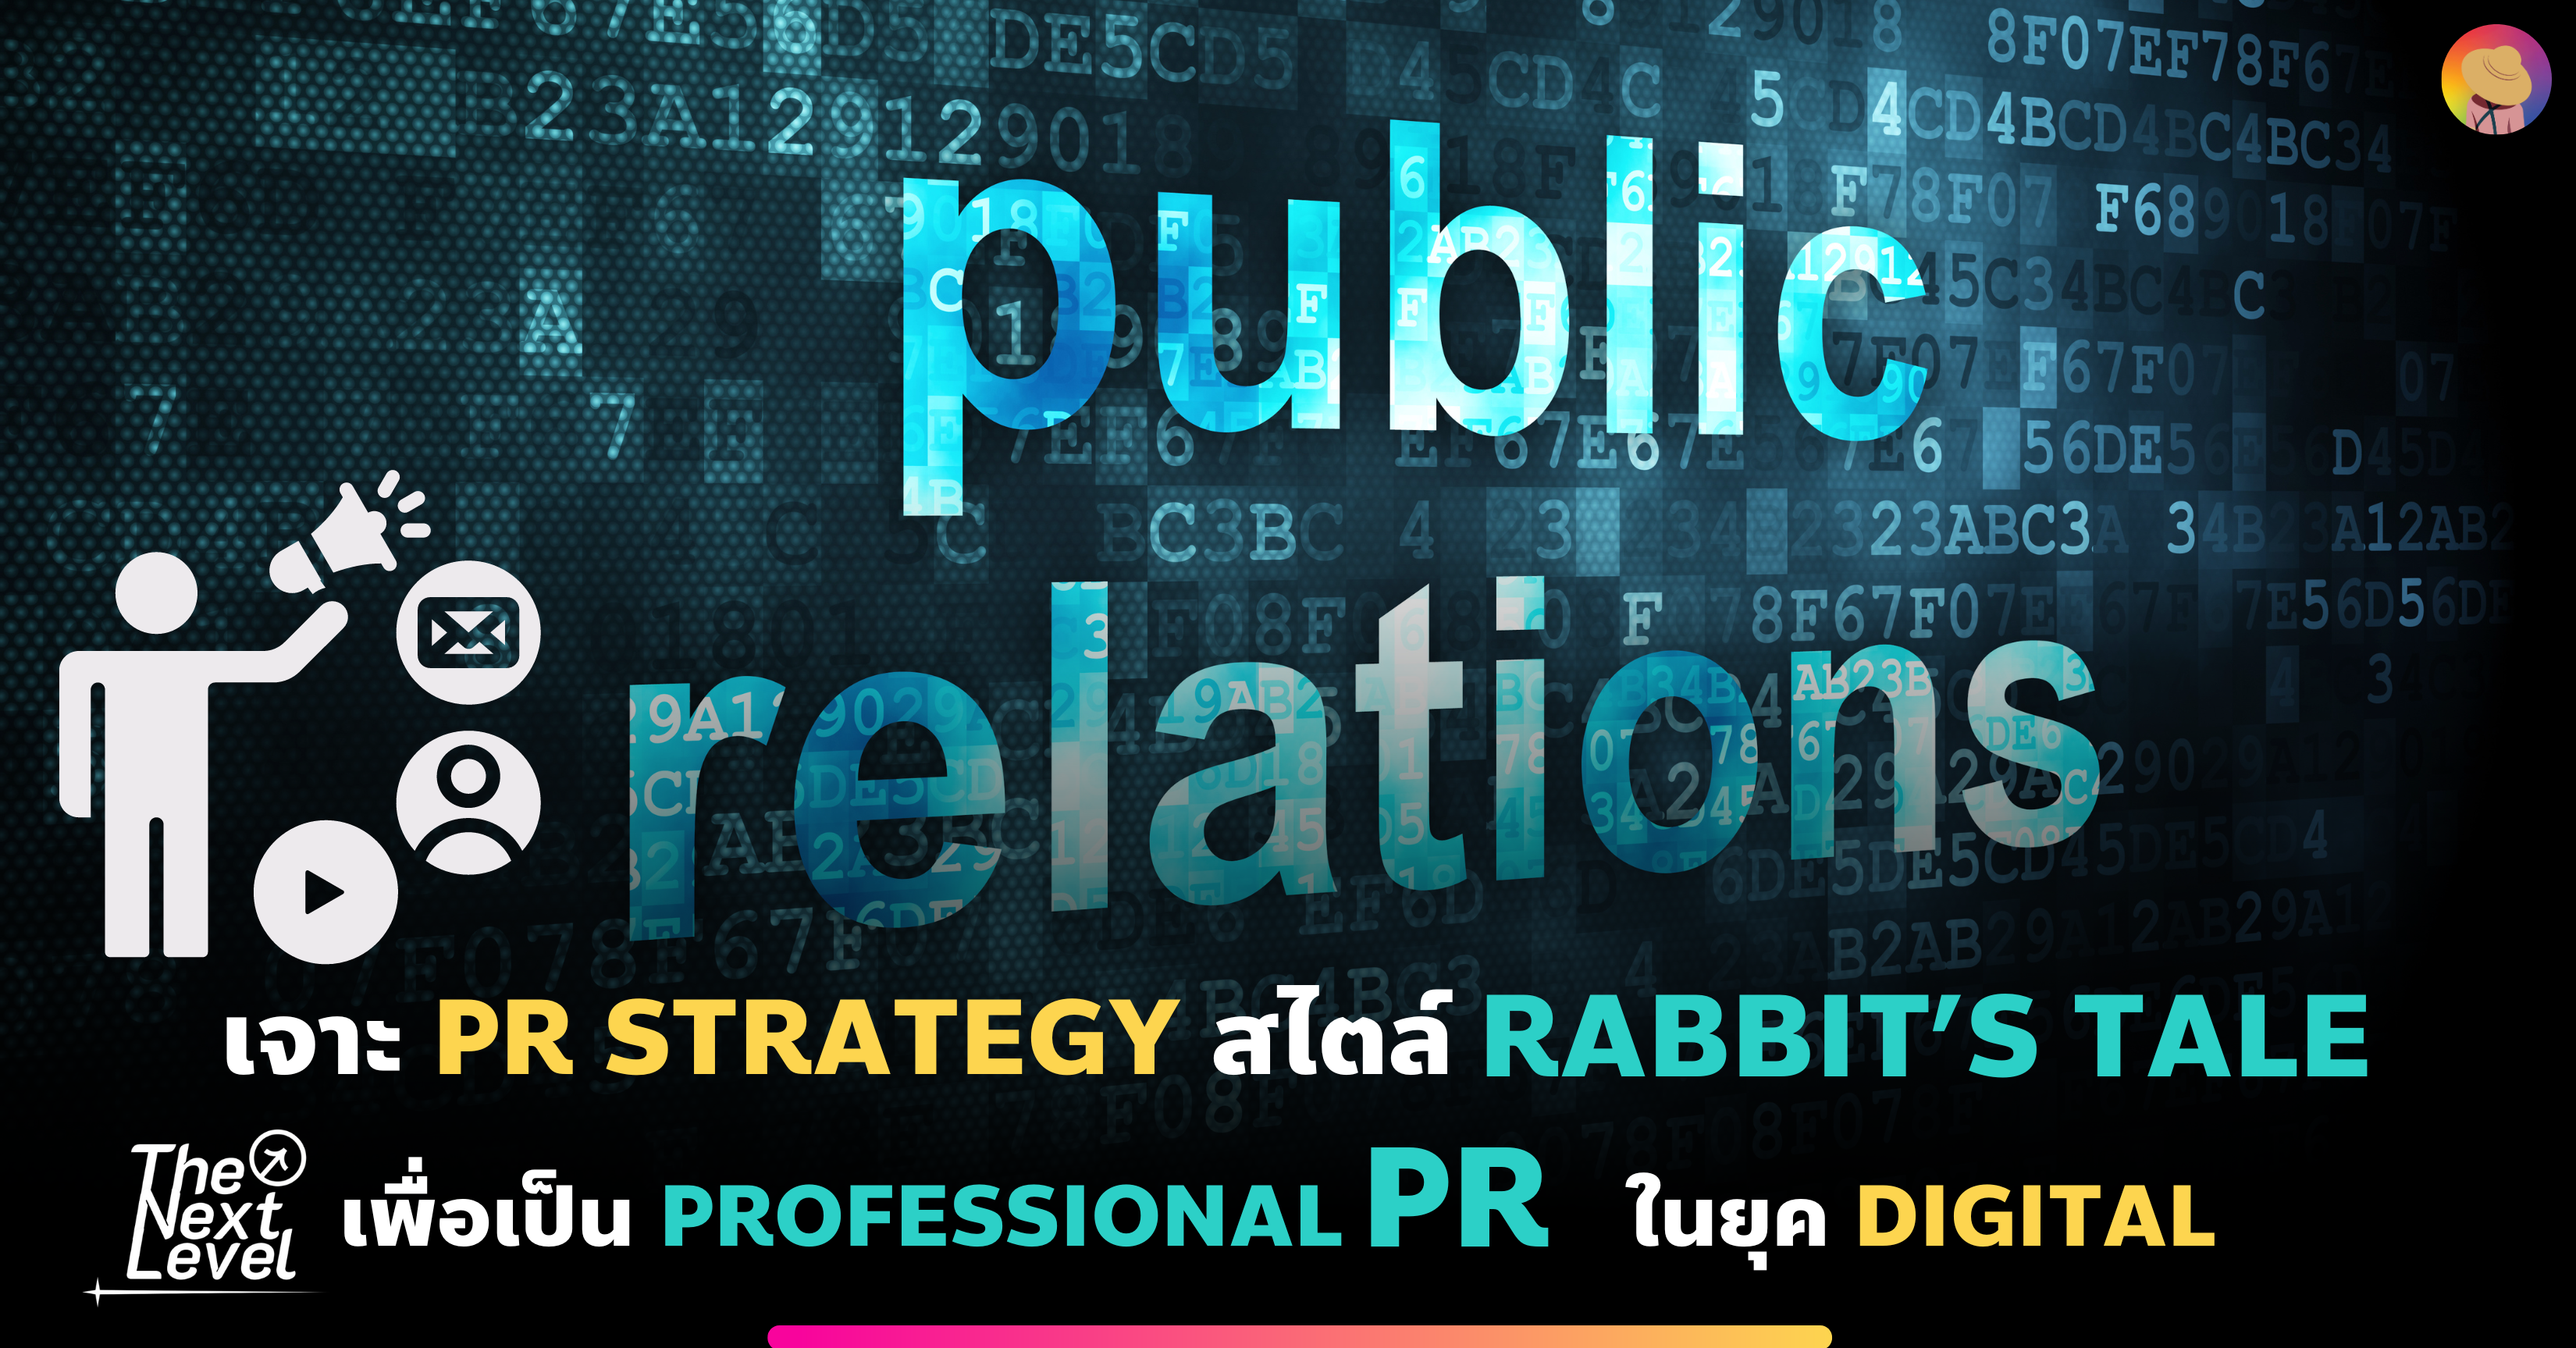 เจาะ PR Strategy สไตล์ Rabbit’s tale เพื่อเป็น Professional PR  ในยุค Digital